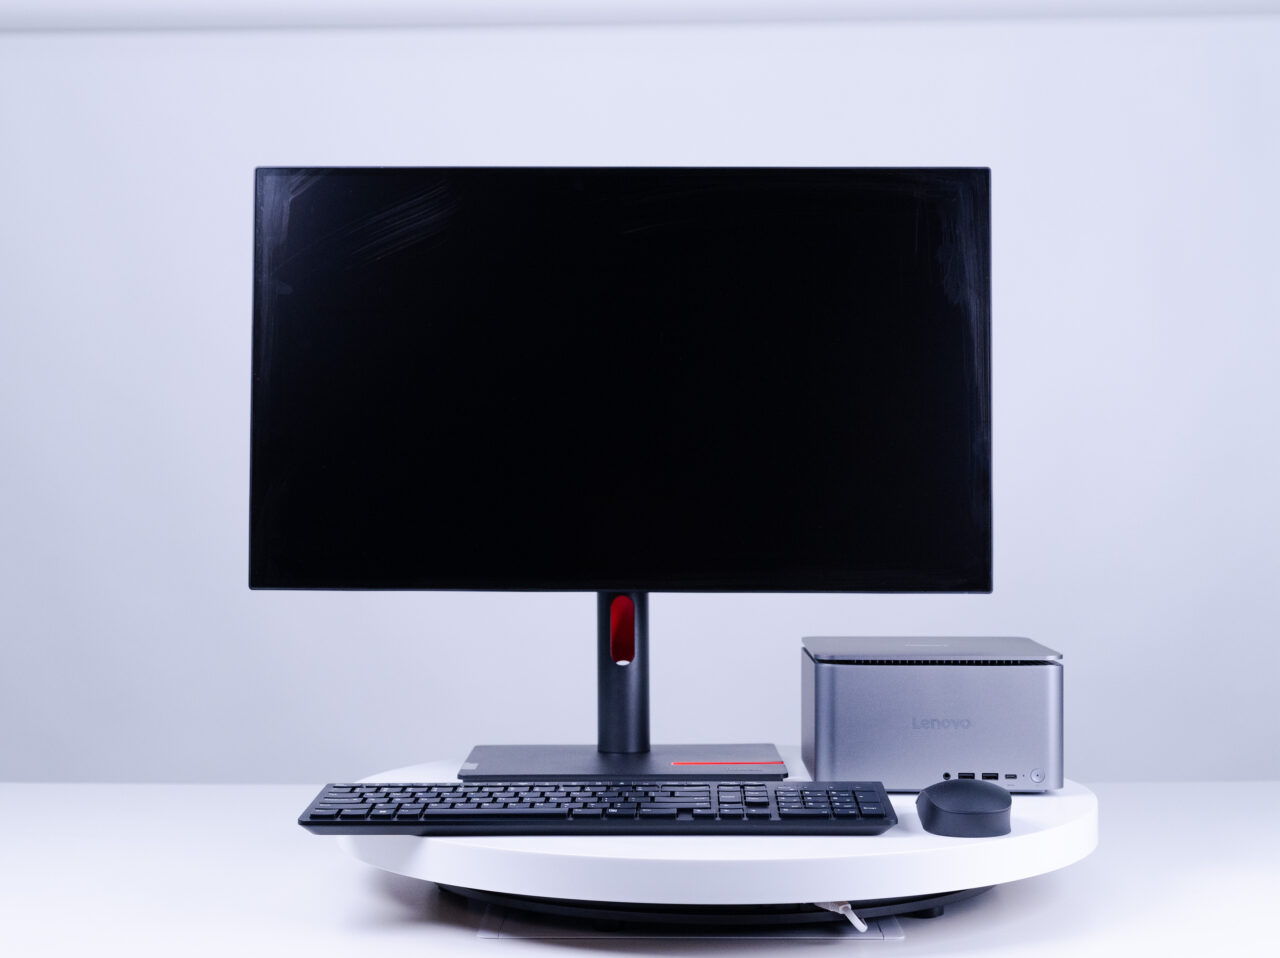 Monitor komputerowy, klawiatura, mini PC marki Lenovo i mysz na białym biurku przed jasnym tłem.